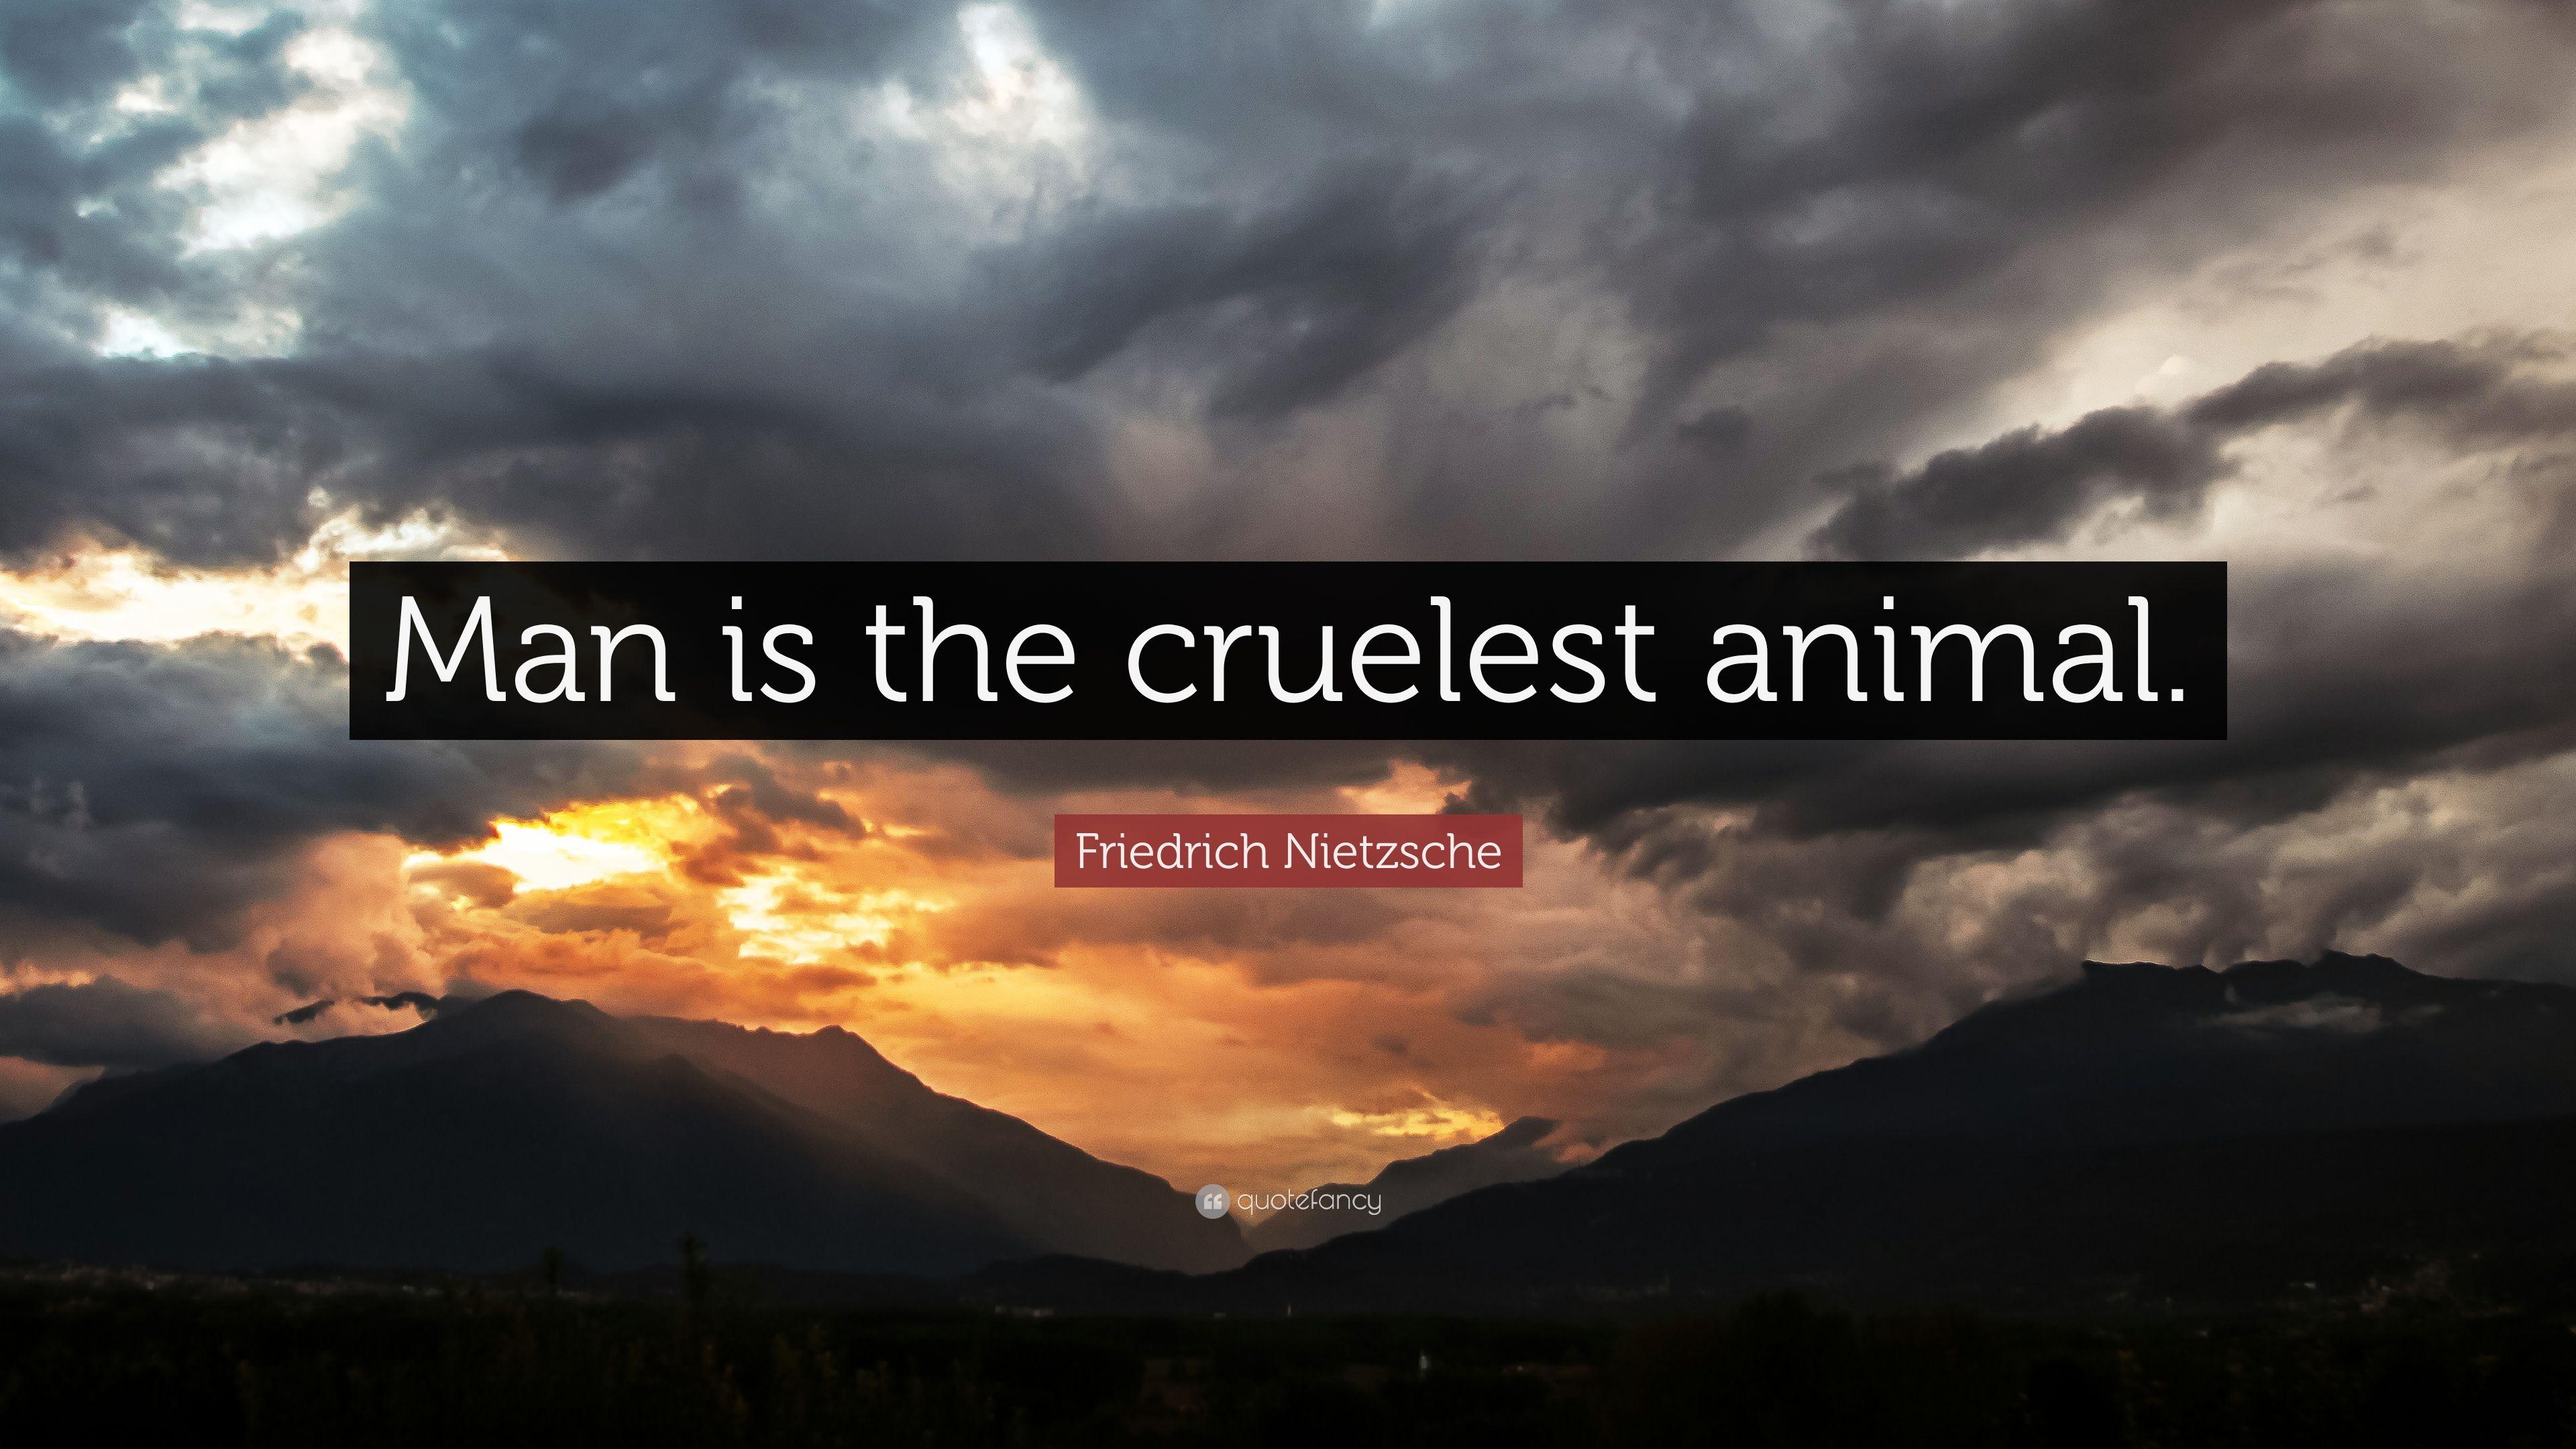 Friedrich Nietzsche Quote: “Man is the cruelest animal.” 16